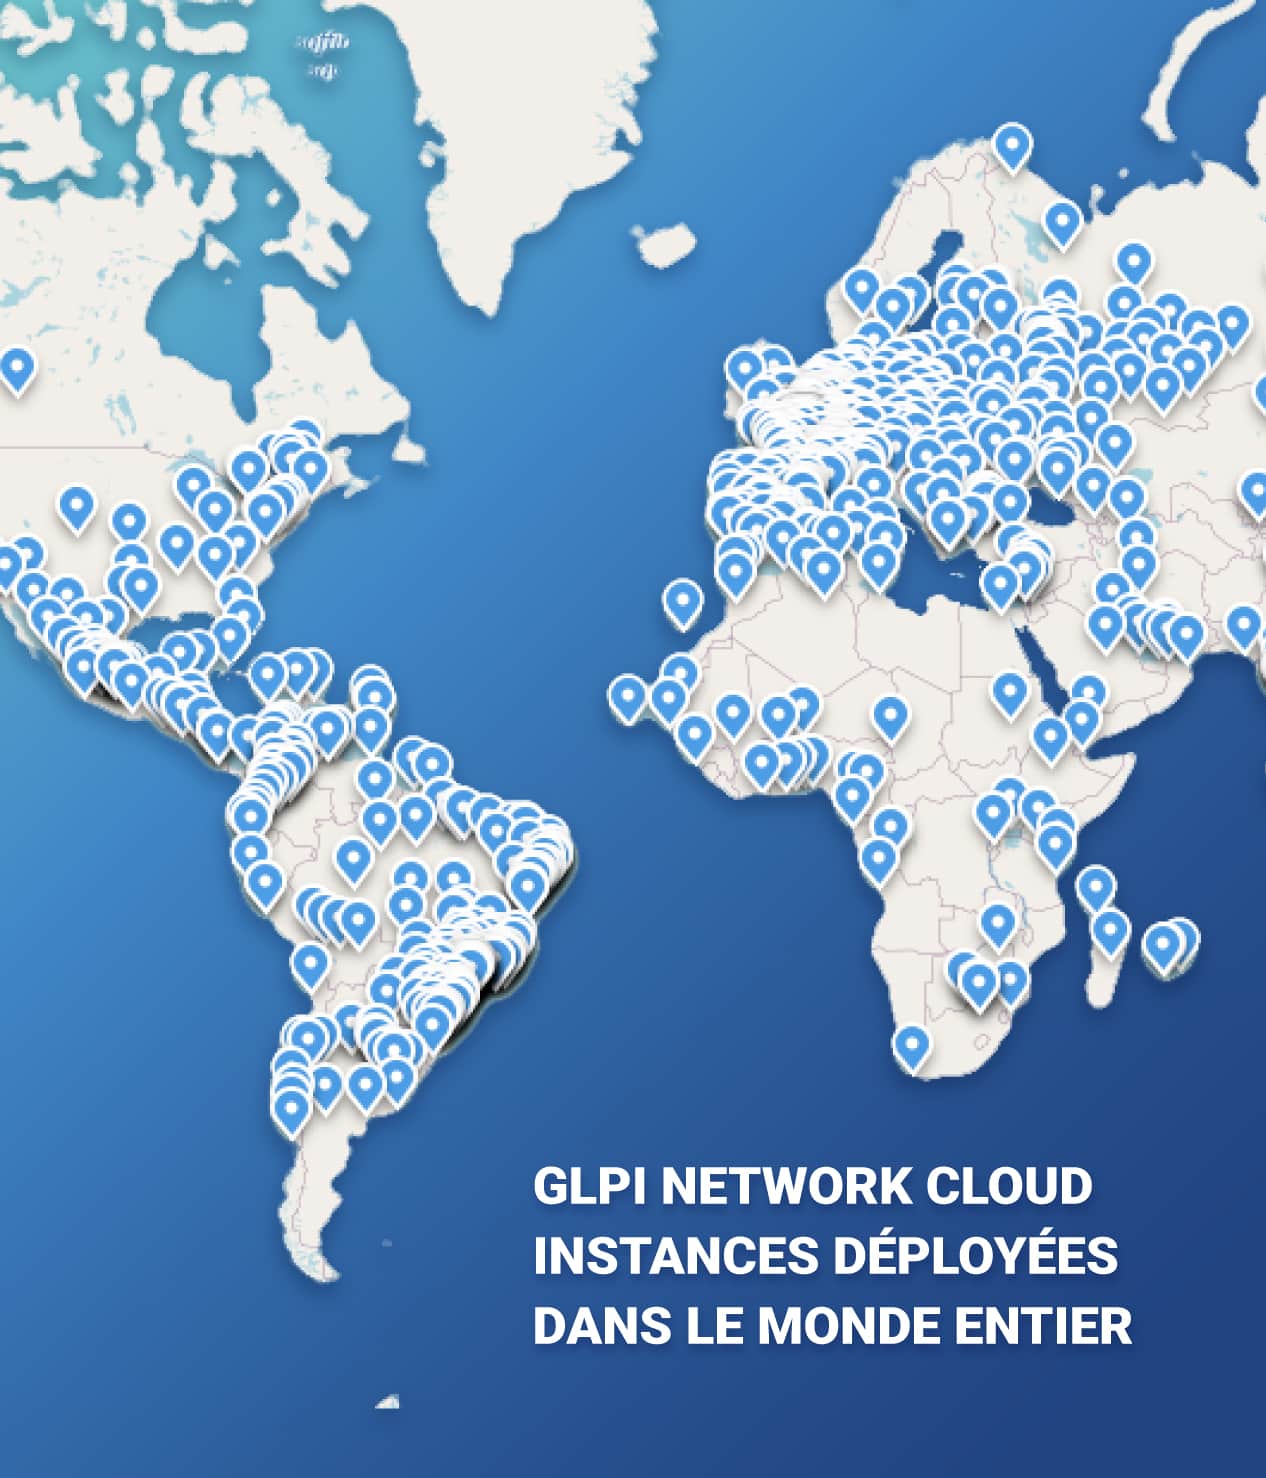 GLPI Network Cloud